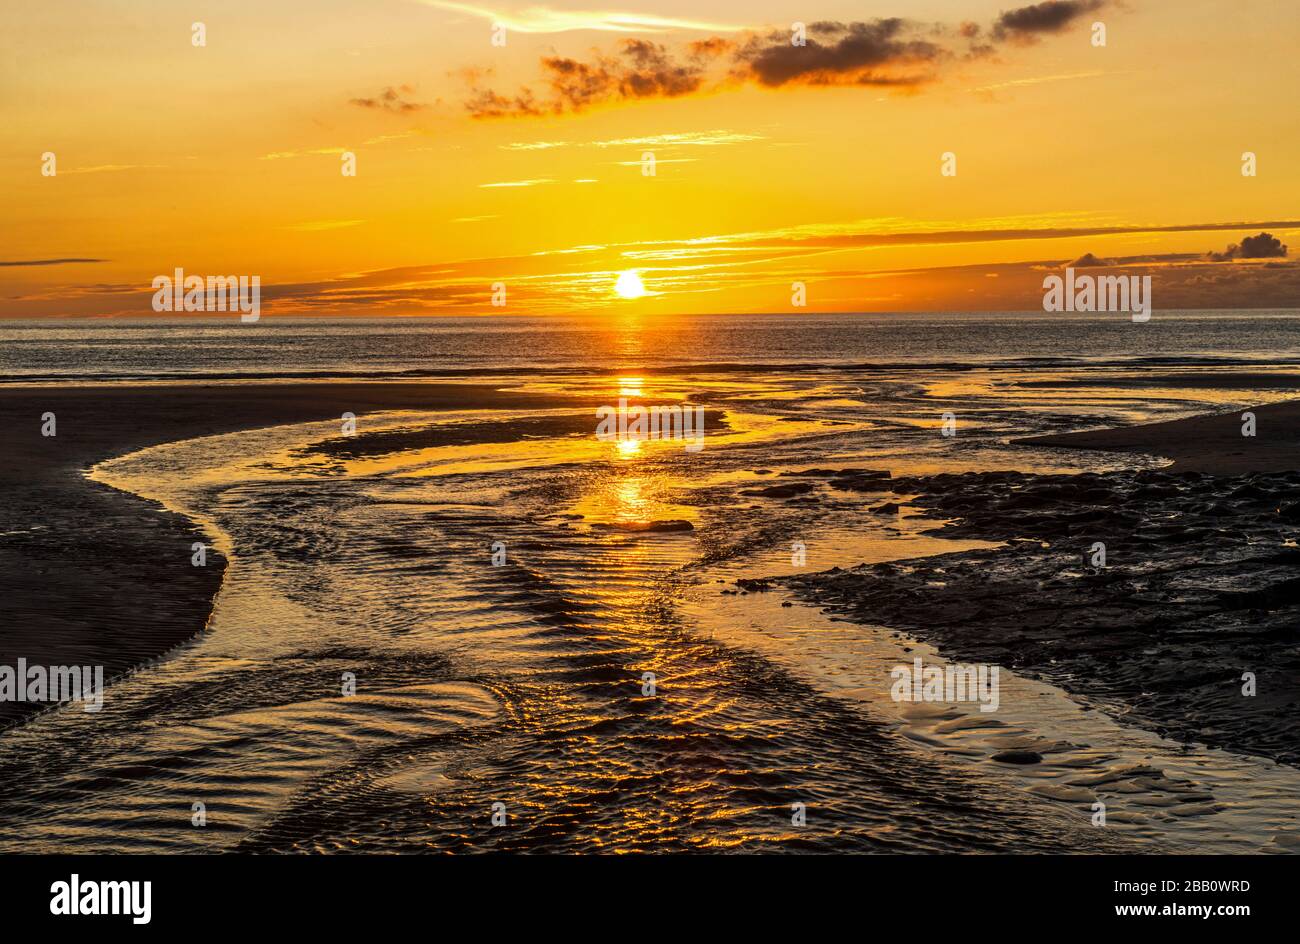 Der Abend, der in der Dunraven Bay an der Glamorgan Heritage Coast in Südwales Sonne untergeht Stockfoto